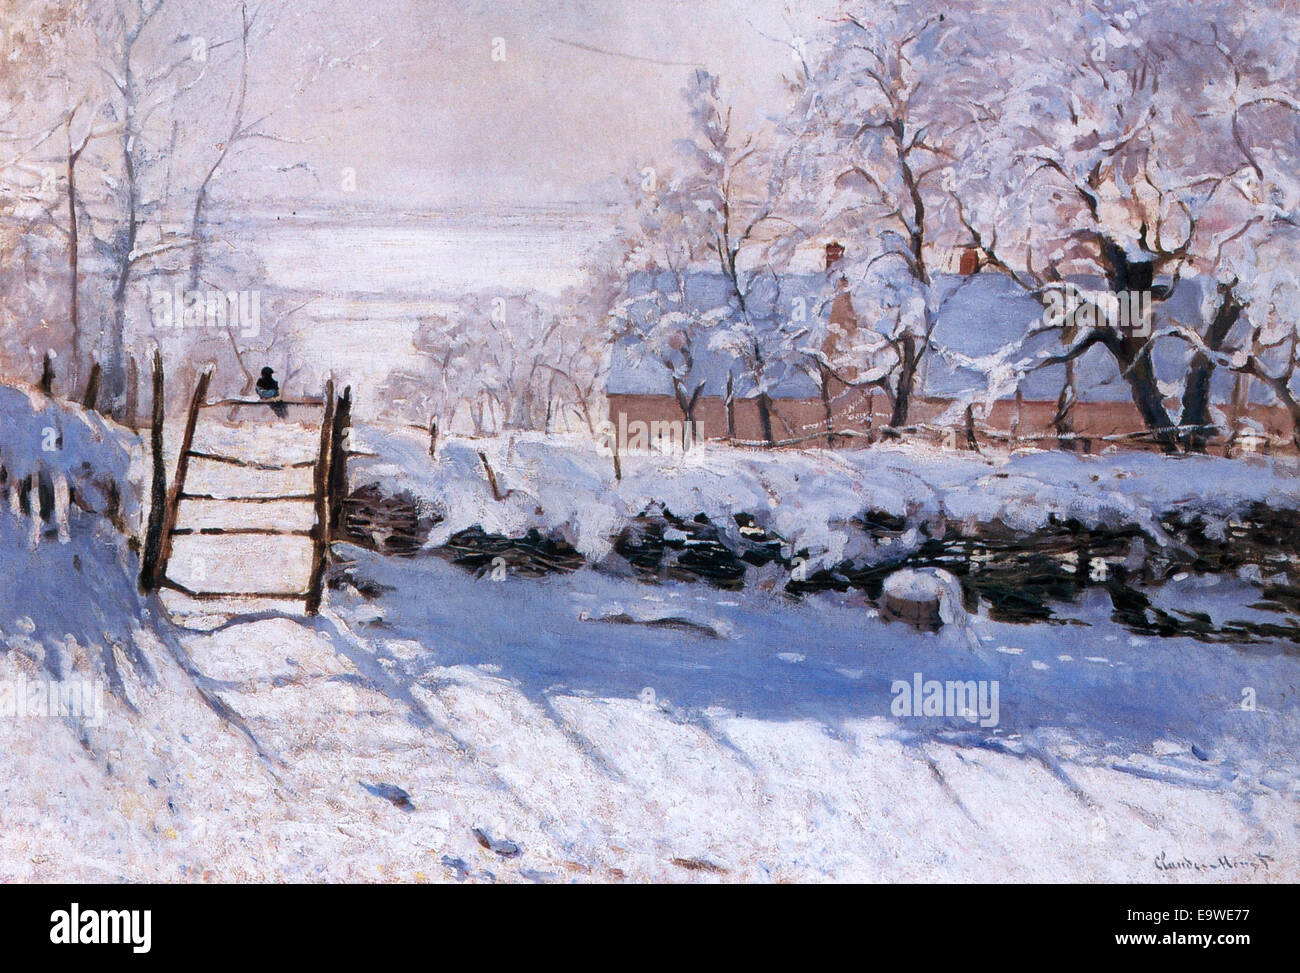 Die Elster, 1868 – 1869, einer der frühen Versuche Monets Erfassung der Wirkung von Schnee auf die Landschaft. Stockfoto